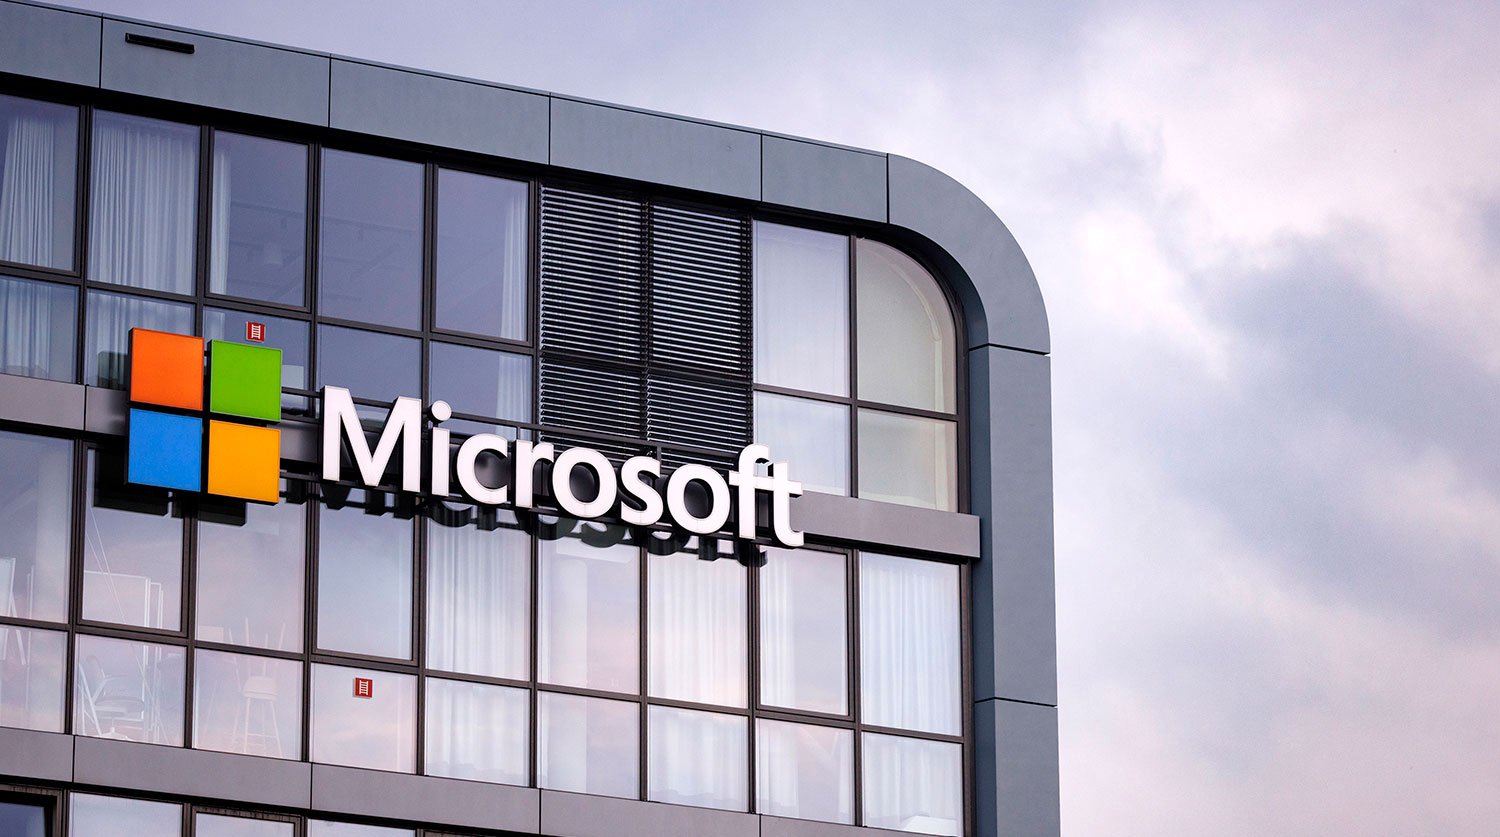 ԱՄՆ-ն Չինաստանին պաշտոնապես մեղադրում է Microsoft-ի էլեկտրոնային փոստի համակարգը կոտրելու մեջ